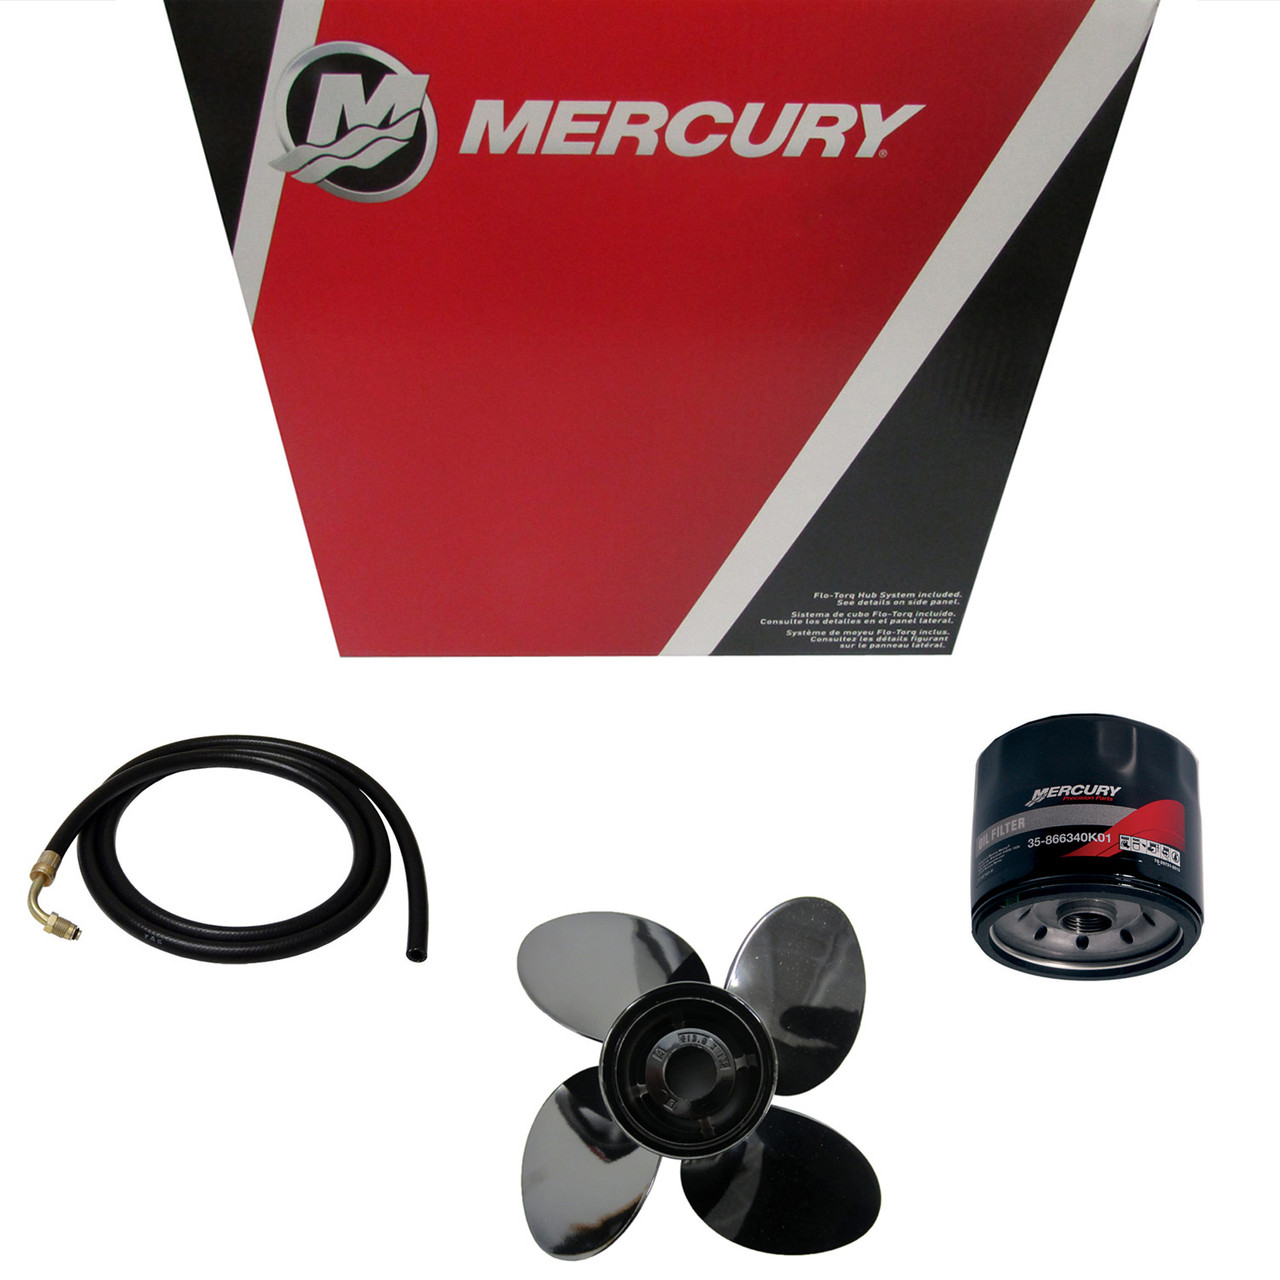 Mercury Marine / Mercruiser New OEM 4 In 1 Gaug-Black, 79-8M0052858